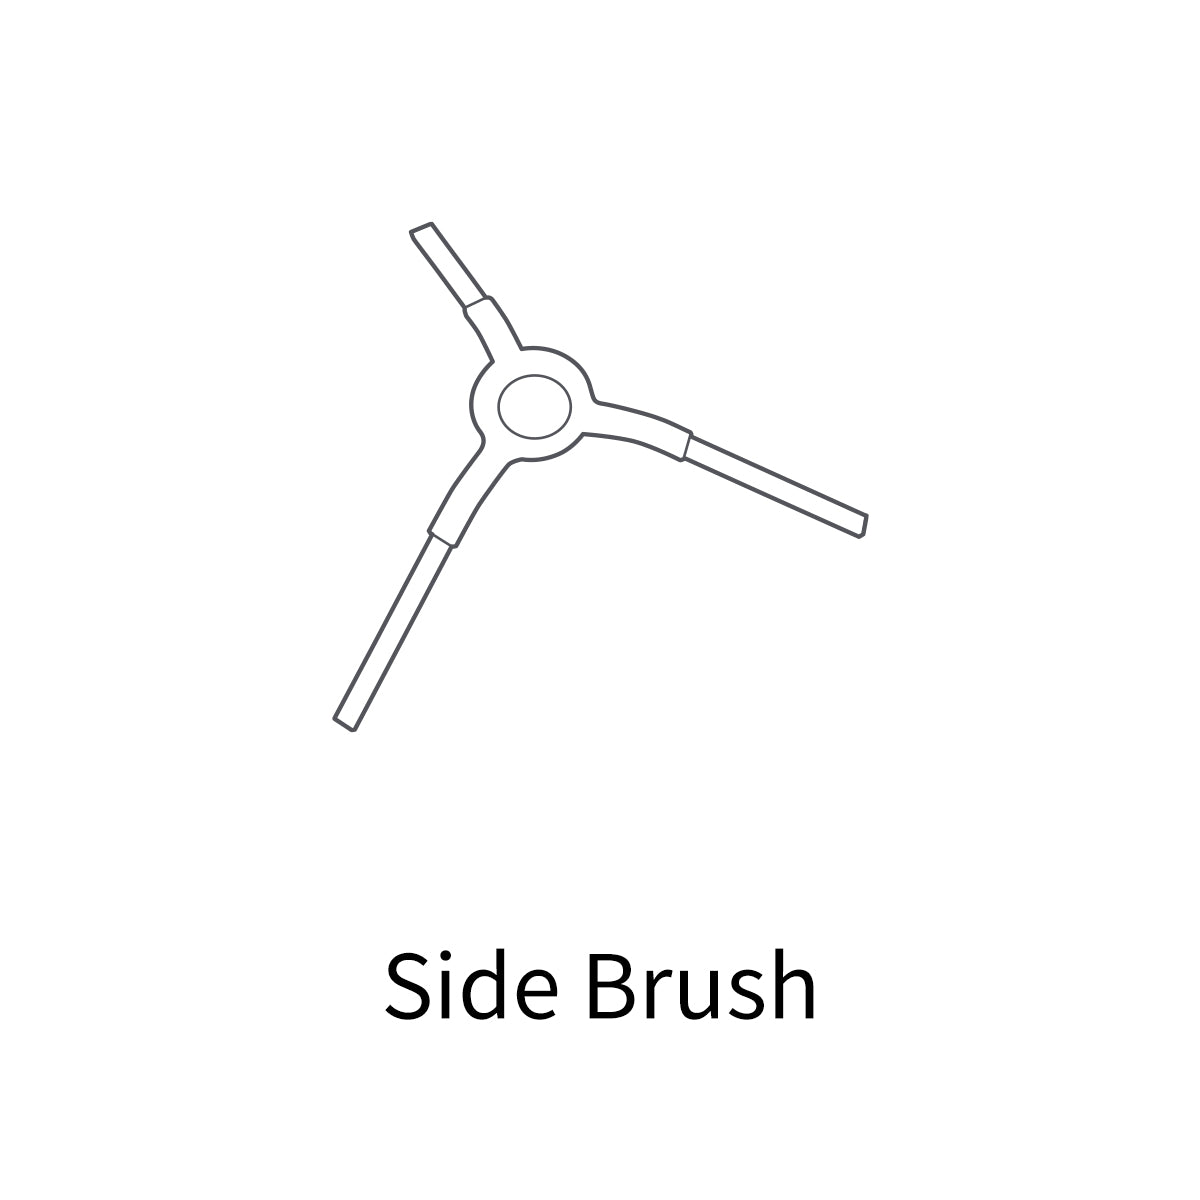 Side Brush